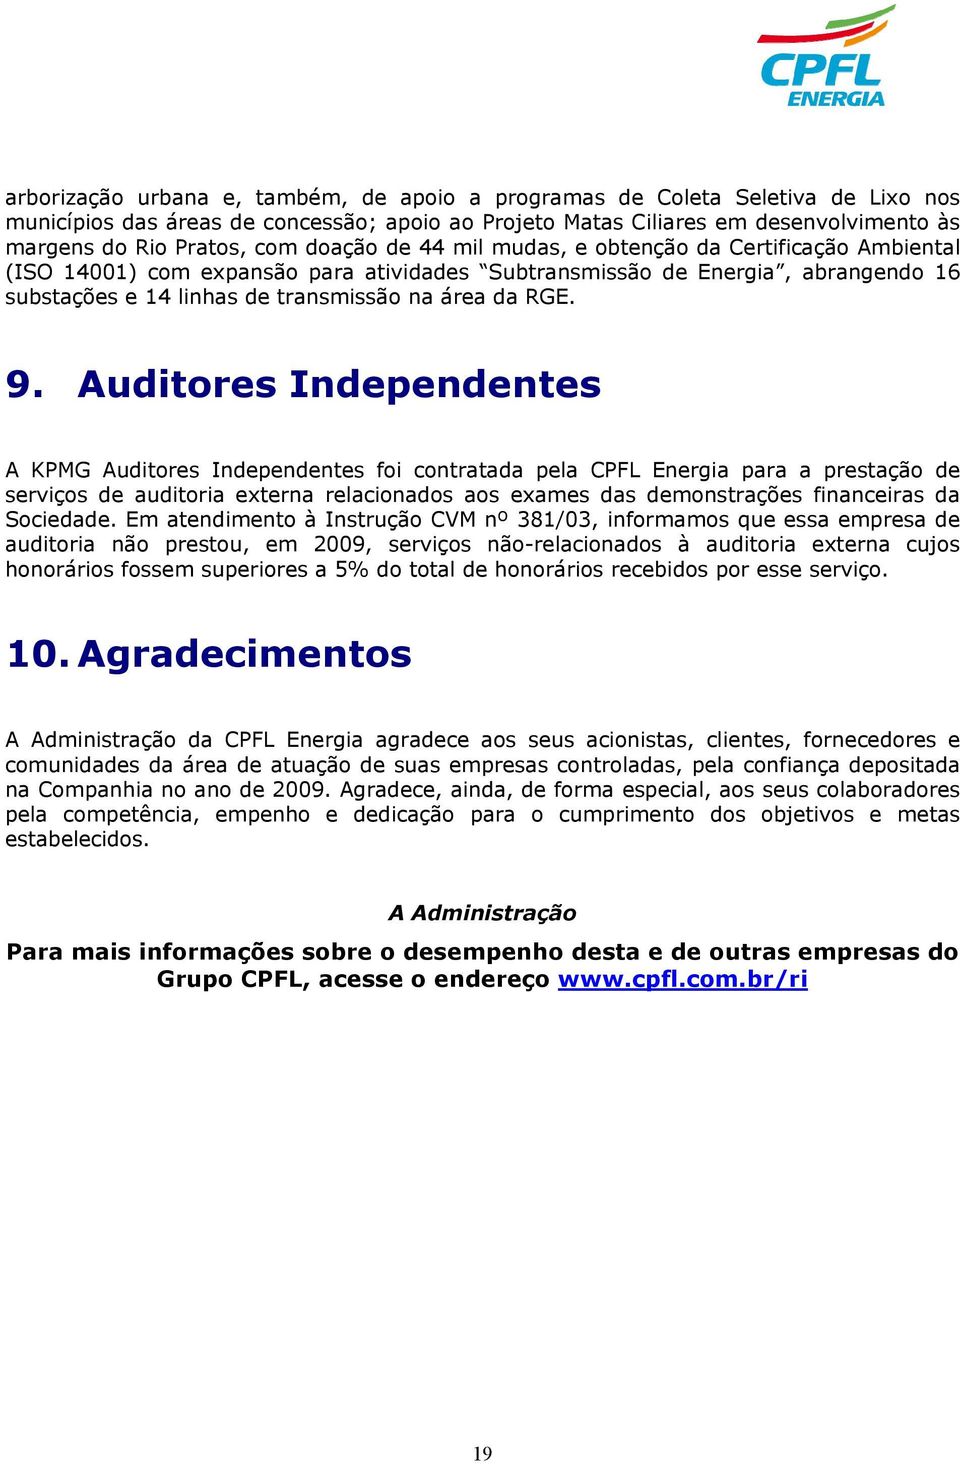 Auditores Independentes A KPMG Auditores Independentes foi contratada pela CPFL Energia para a prestação de serviços de auditoria externa relacionados aos exames das demonstrações financeiras da